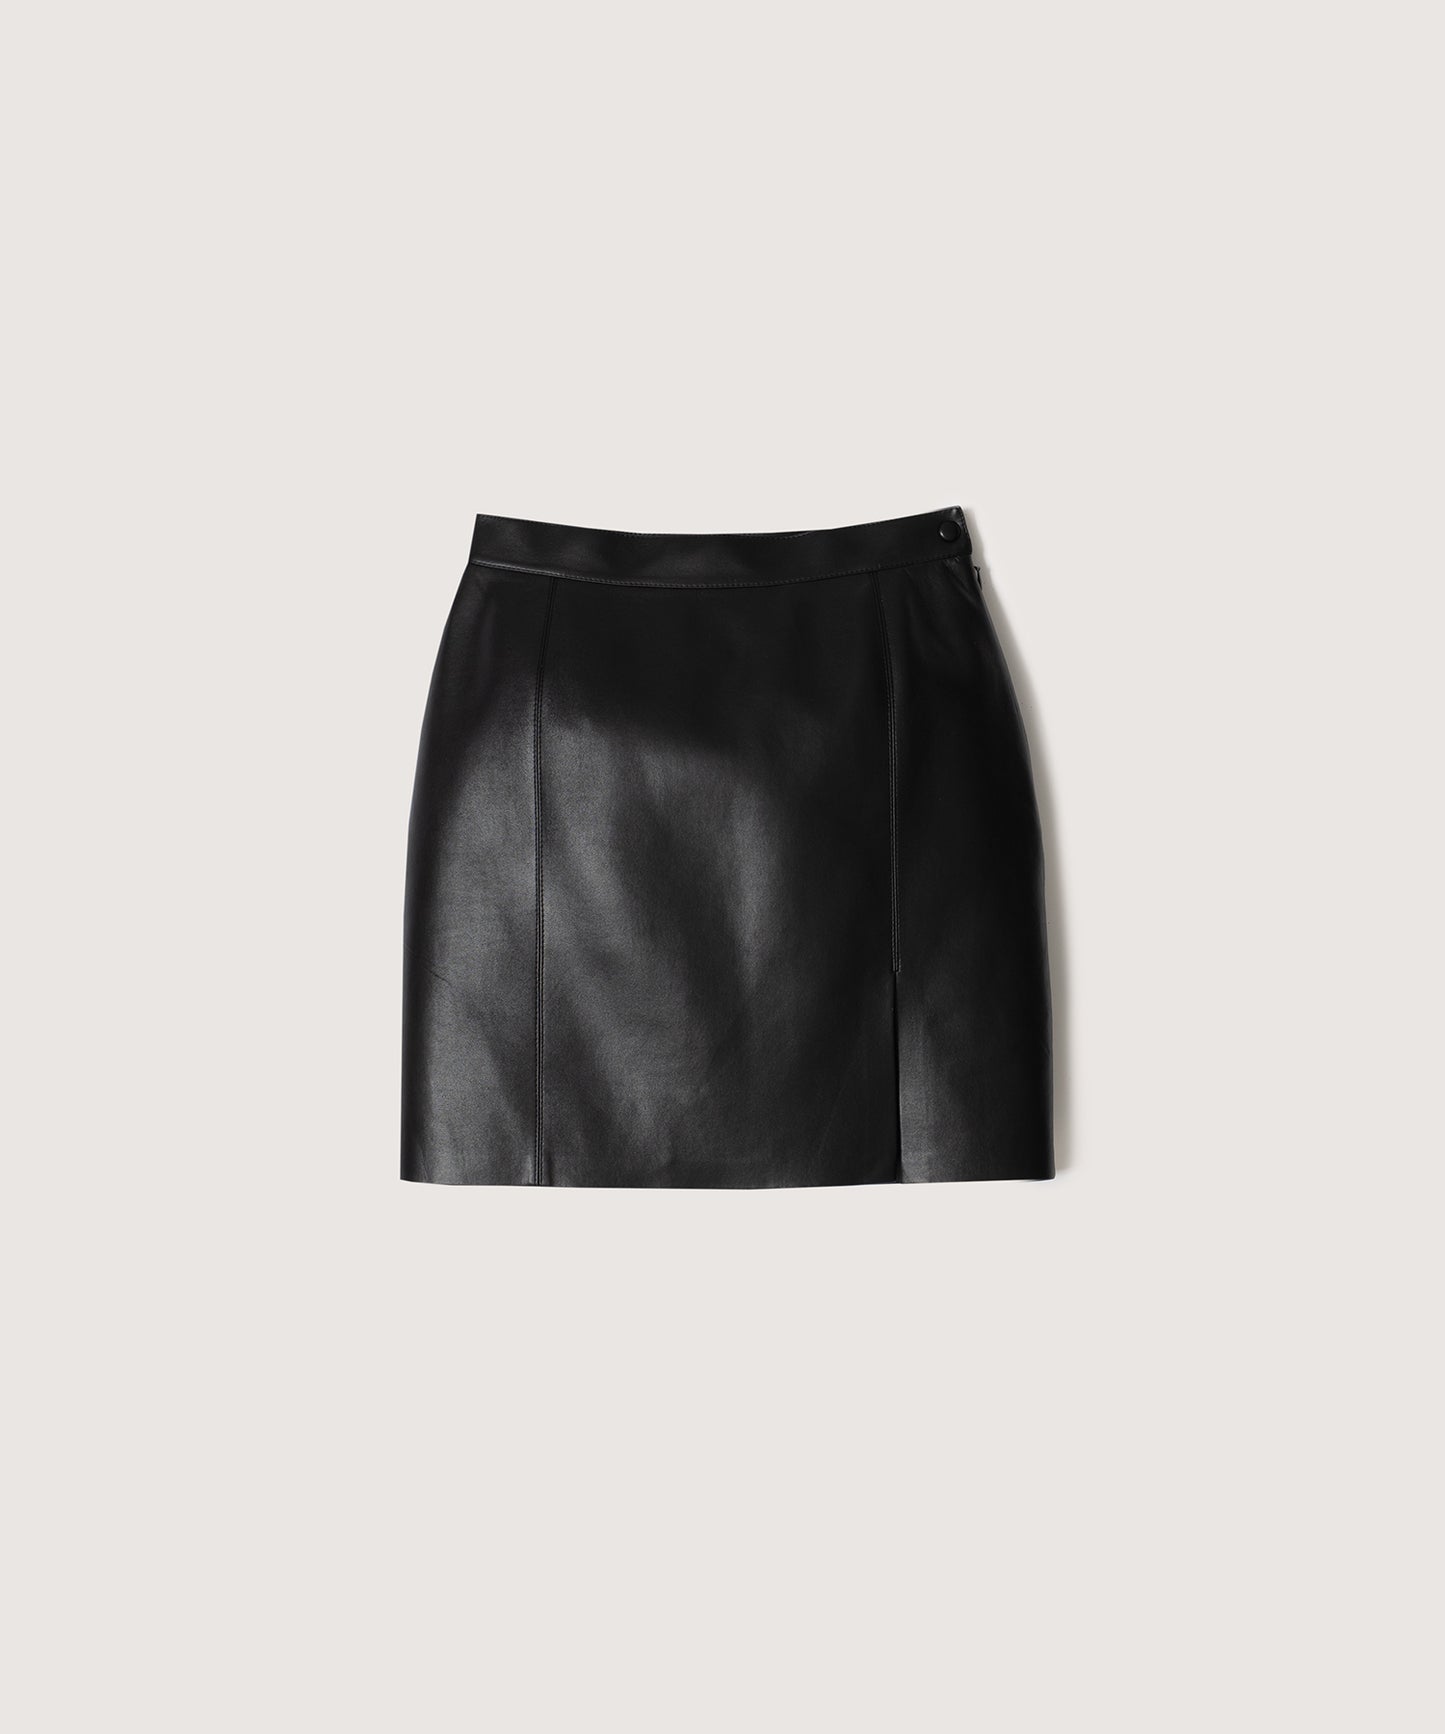 Gima - Sale Regenerated Leather Mini Skirt - Black